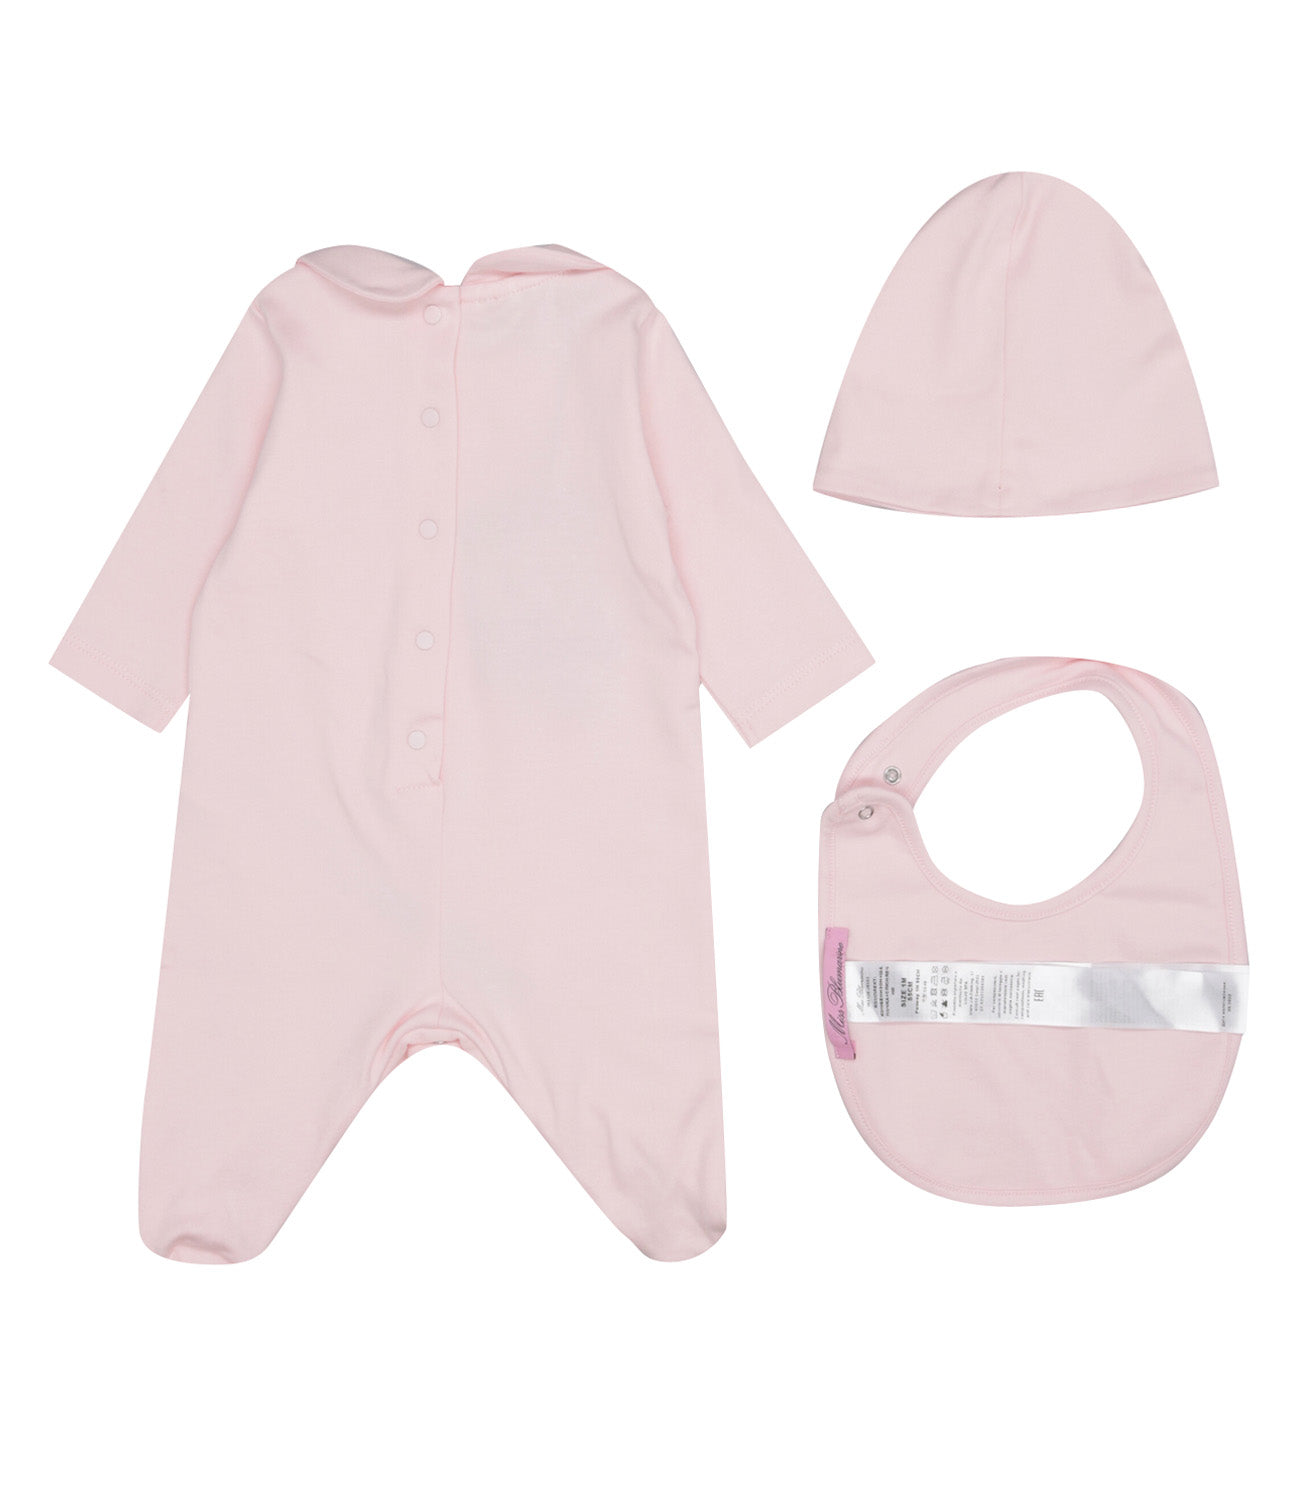 Miss Blumarine | Powder Pink Sleepsuit